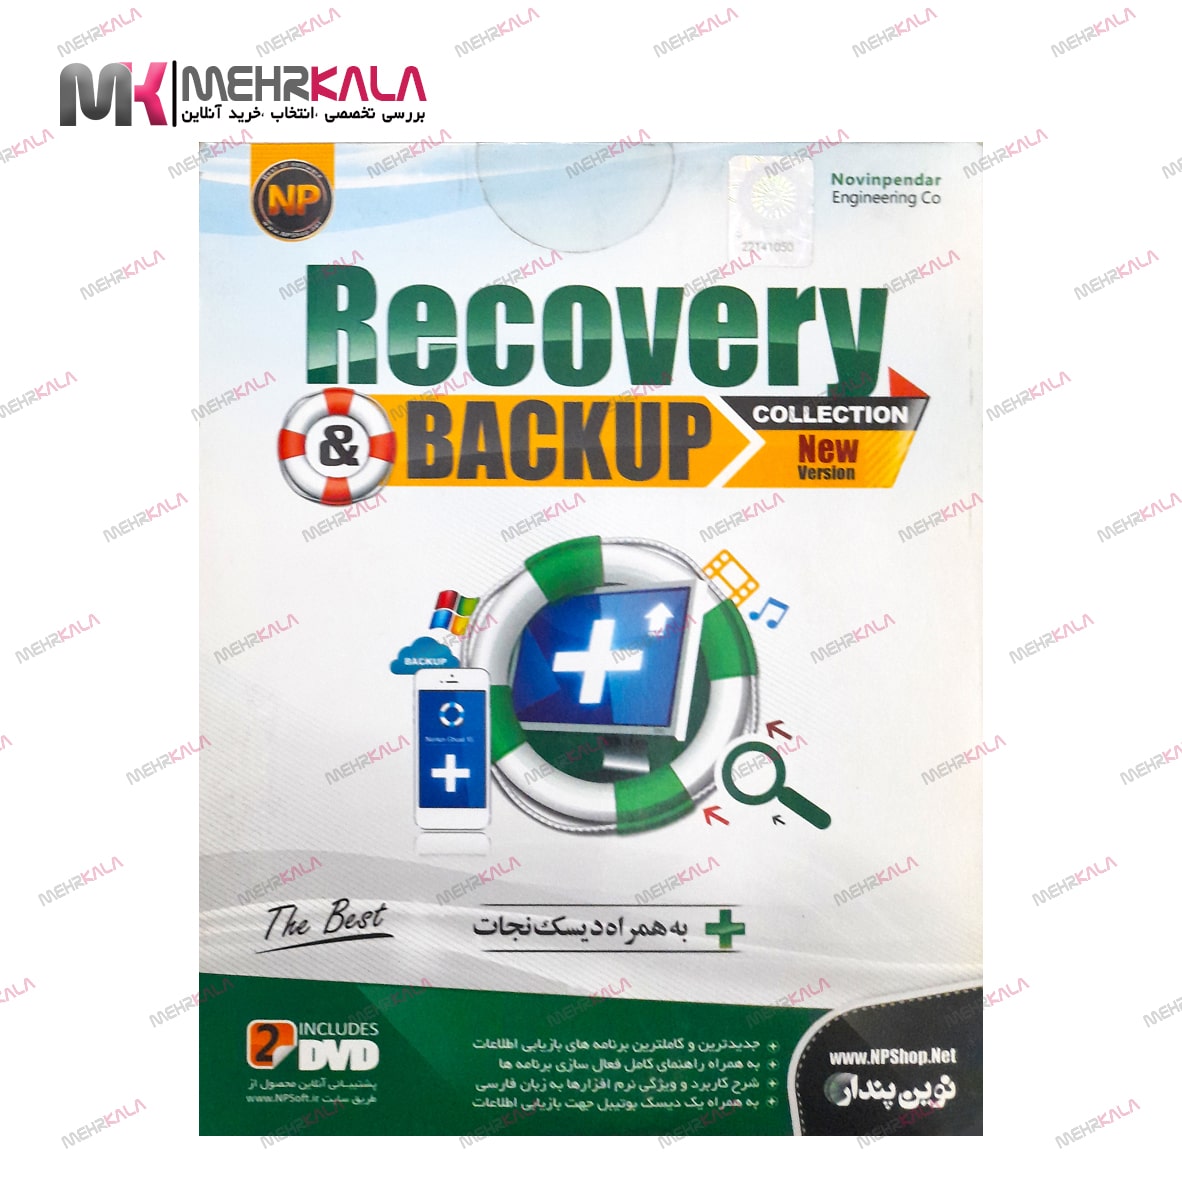 Recovery & Backup Colection | ریکاوری اند بکاپ (نوین پندار)